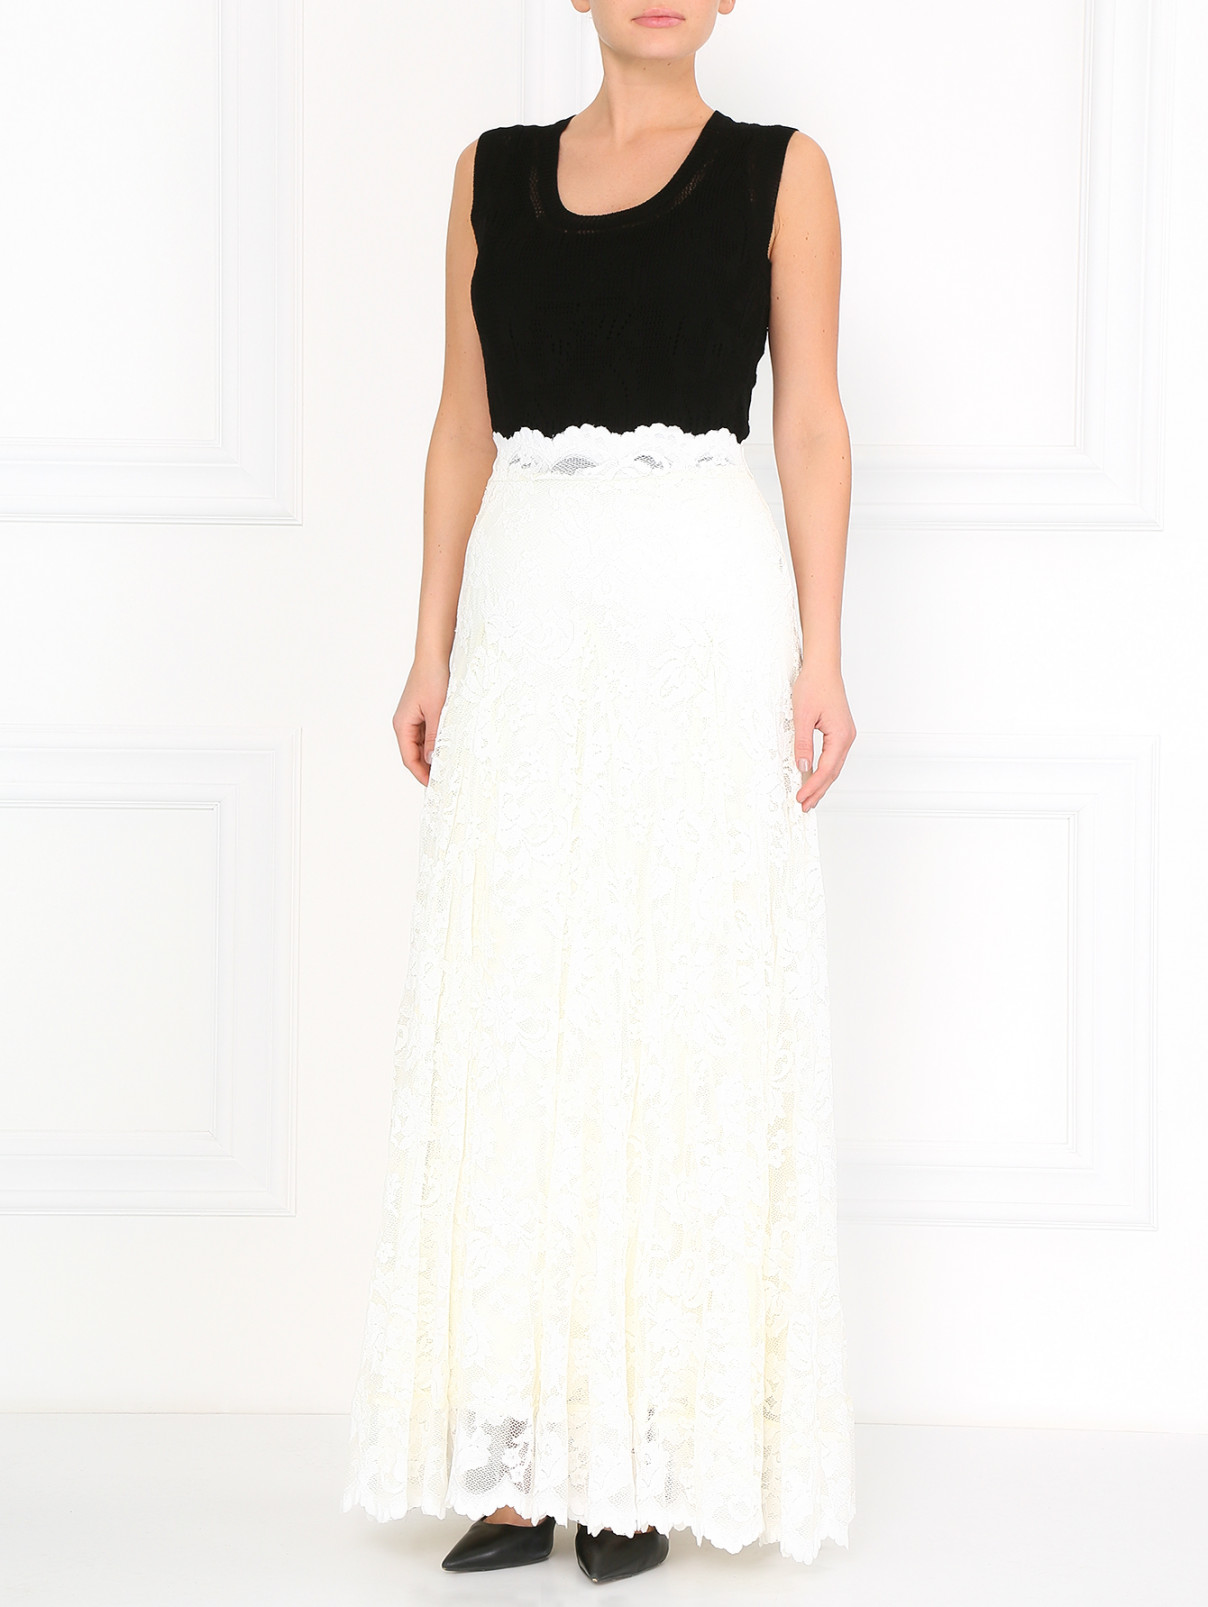 Кружевная юбка-макси Olvi's  –  Модель Общий вид  – Цвет:  Белый